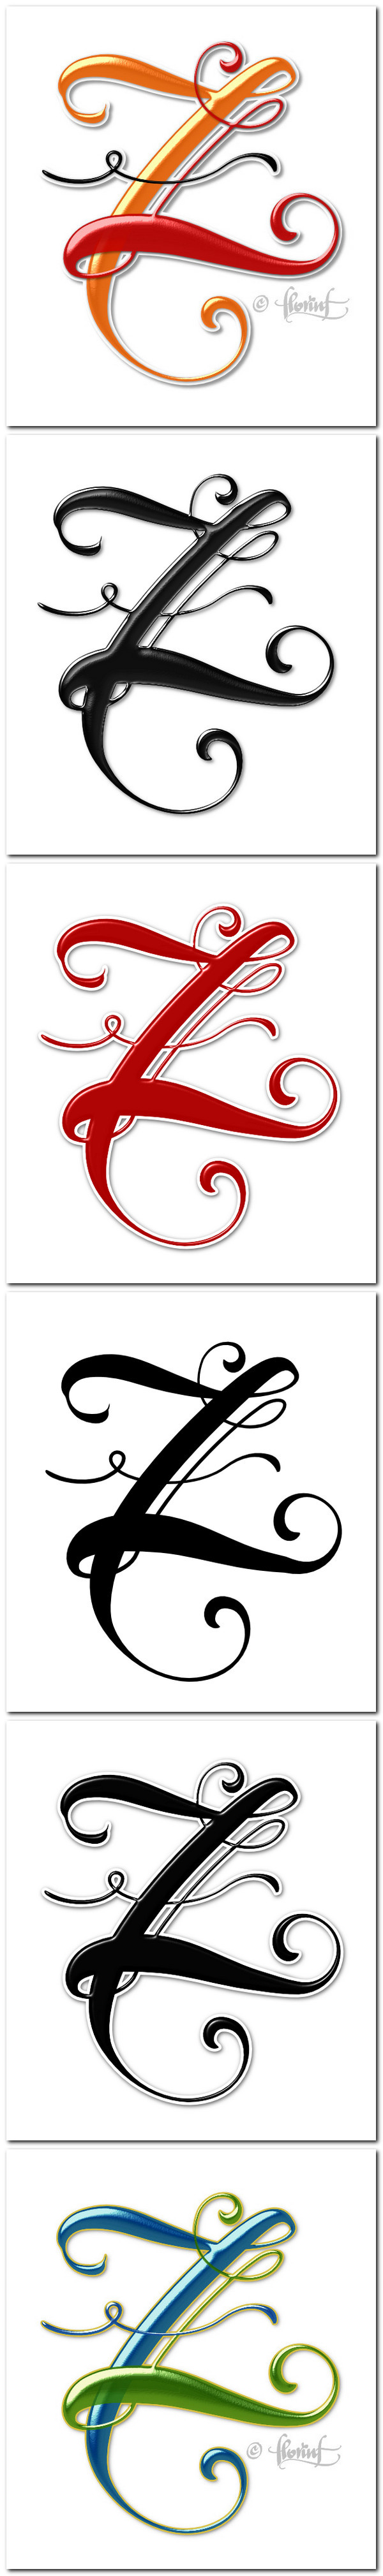 alphabattle alphabet lettering LetterCult florinf Florin Florea type letter